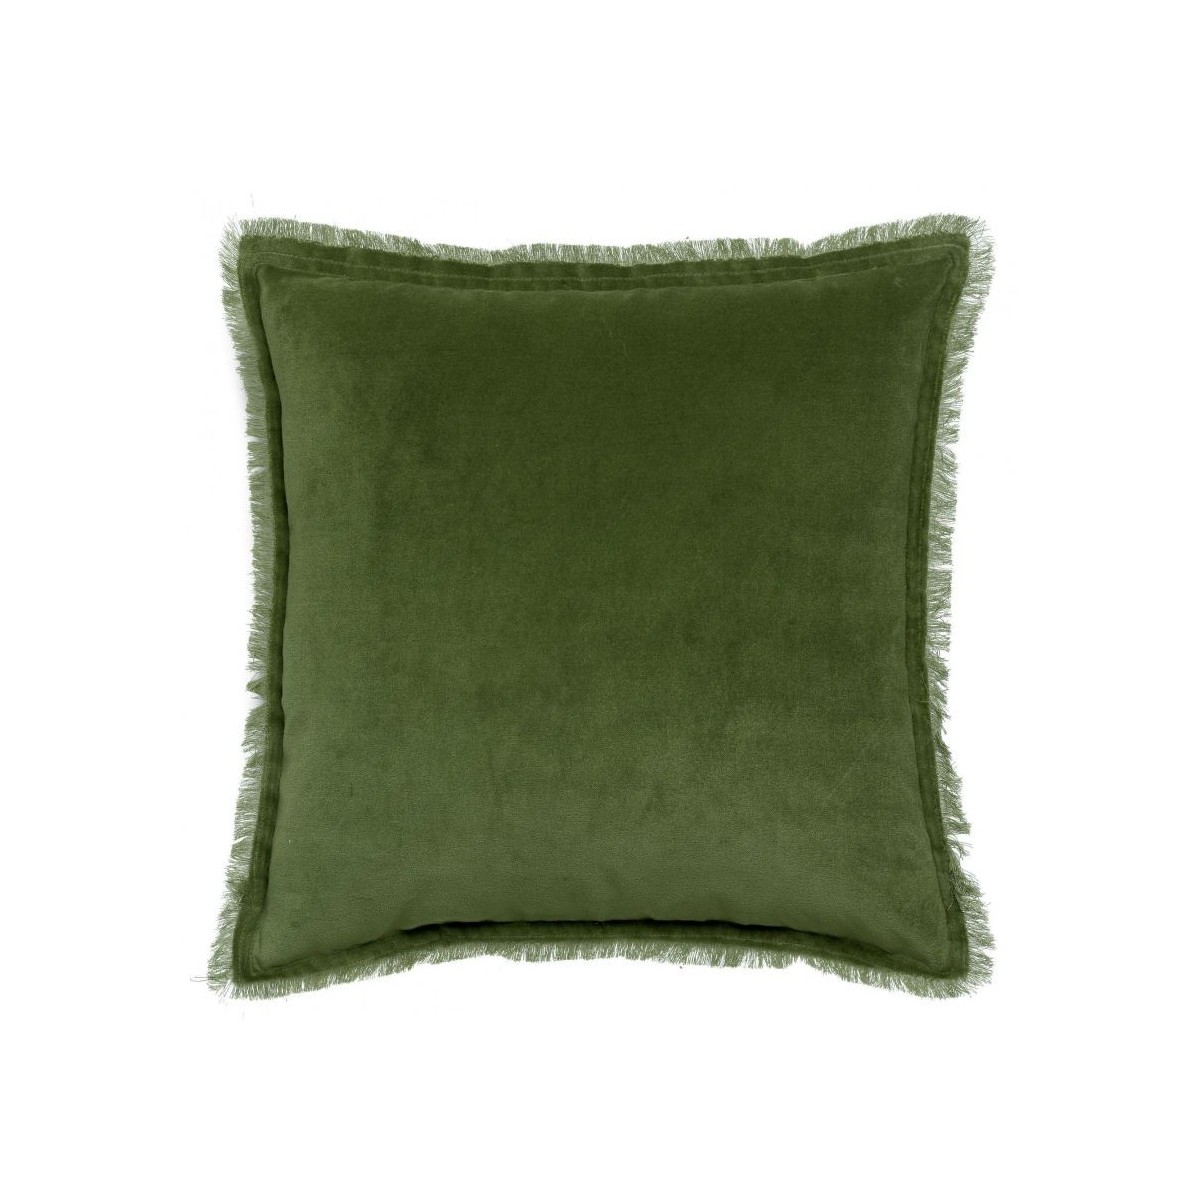 Coussin carré en coton vert foncé avec frange